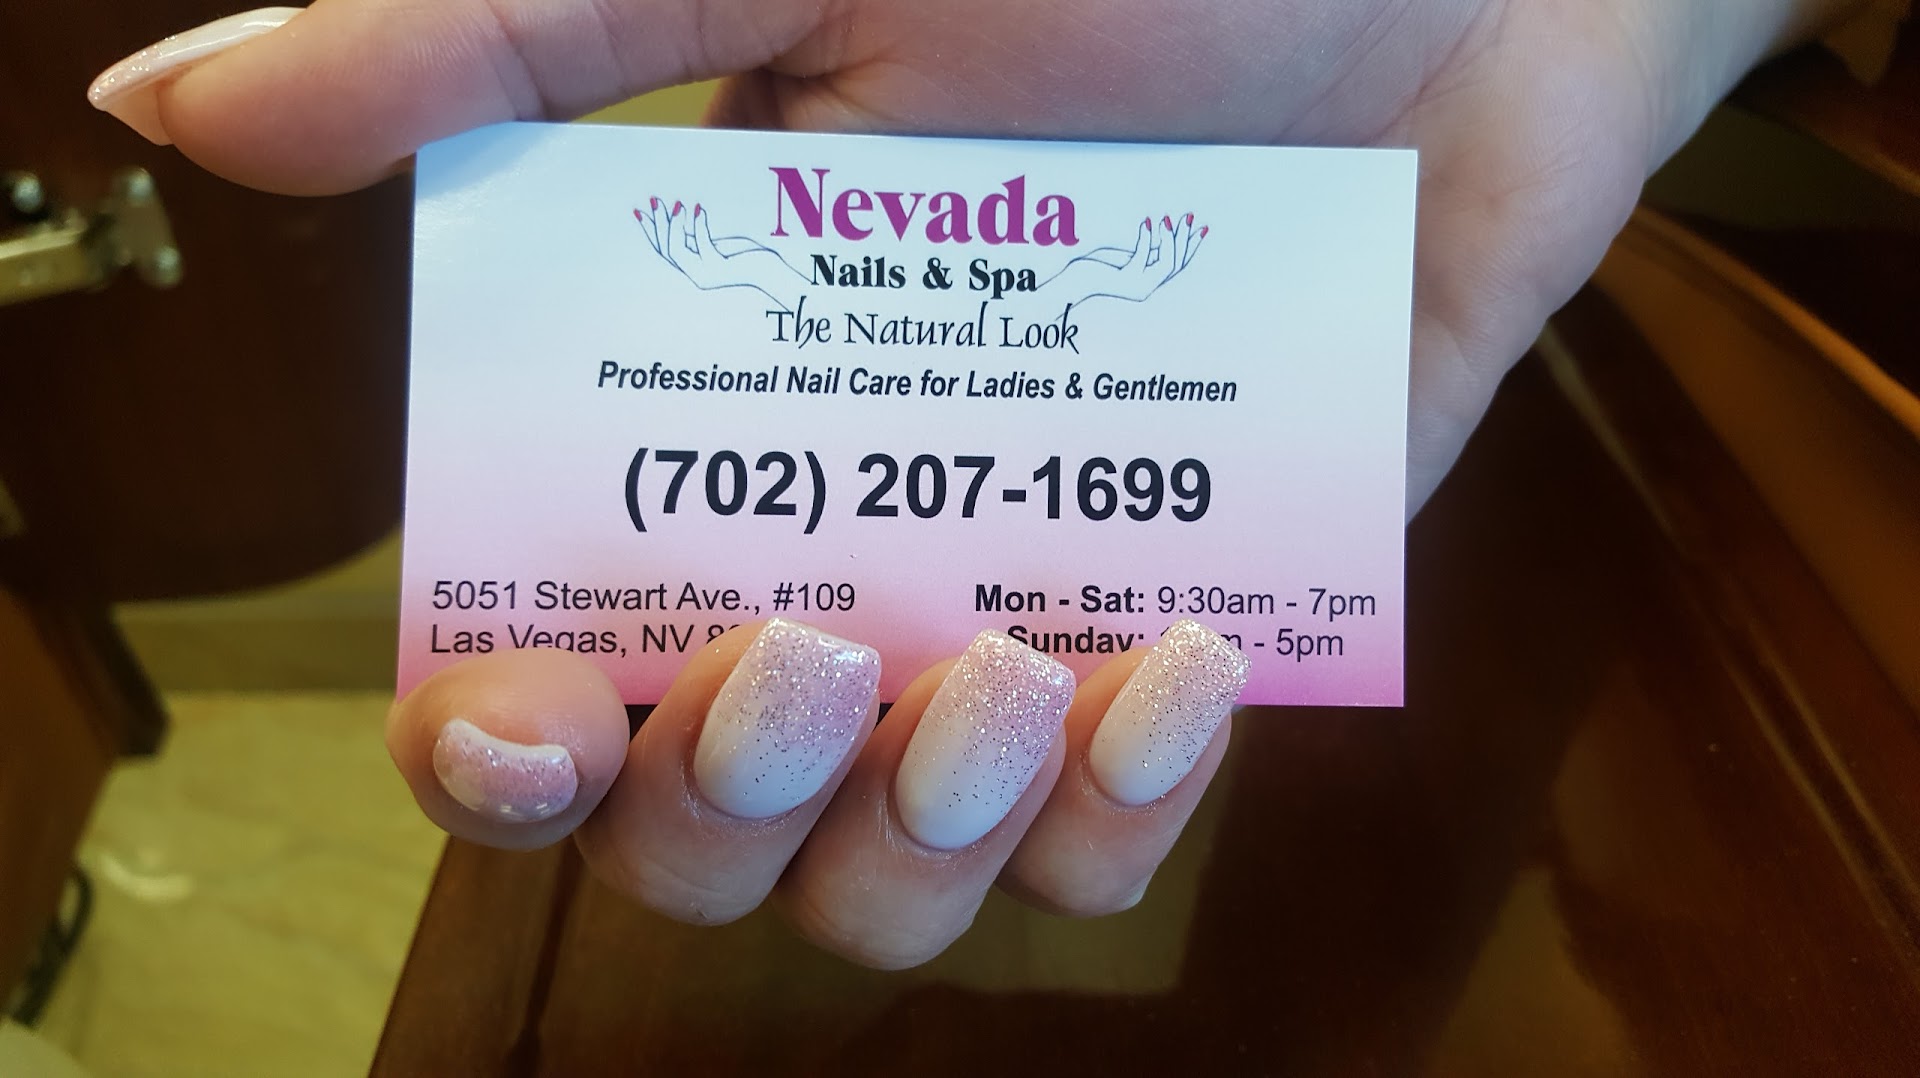 Nevada Nails and Spa